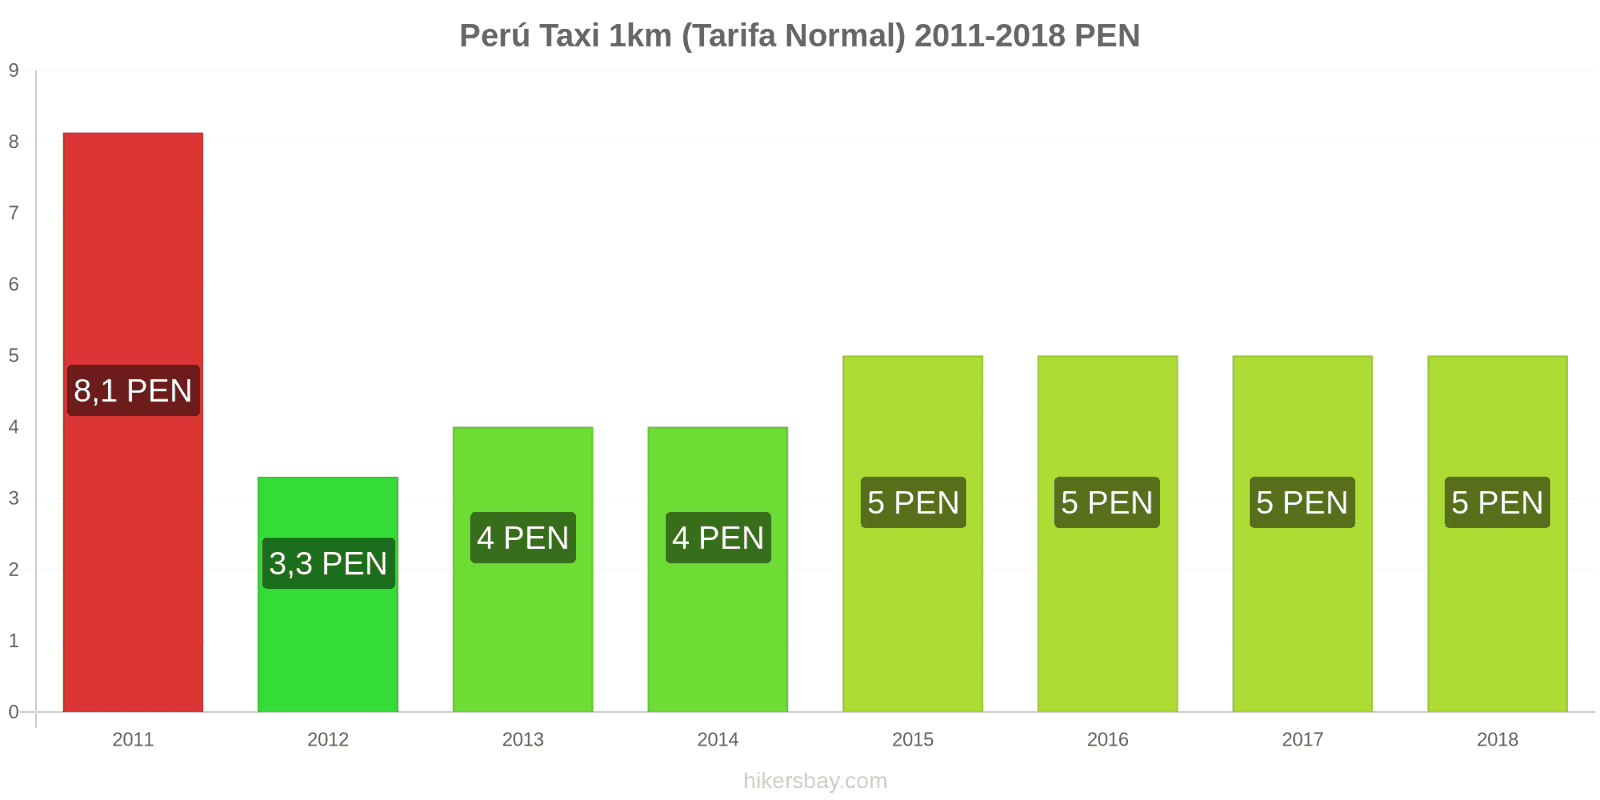 Perú cambios de precios Taxi 1km (tarifa normal) hikersbay.com